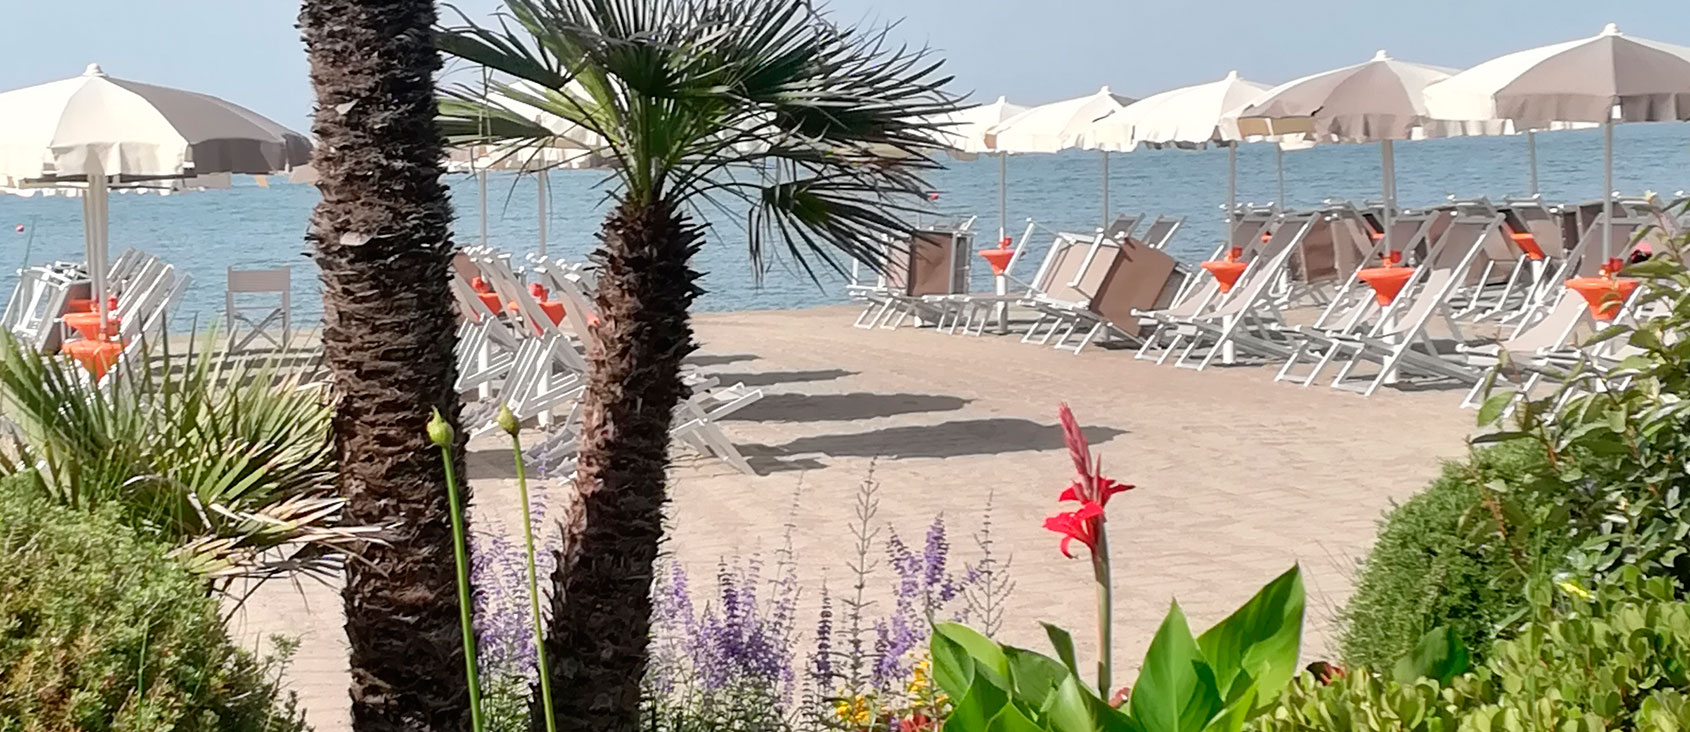 Stabilimento balneare La Pineta, Marinella di Sarzana (SP) - Hotel Ristorante